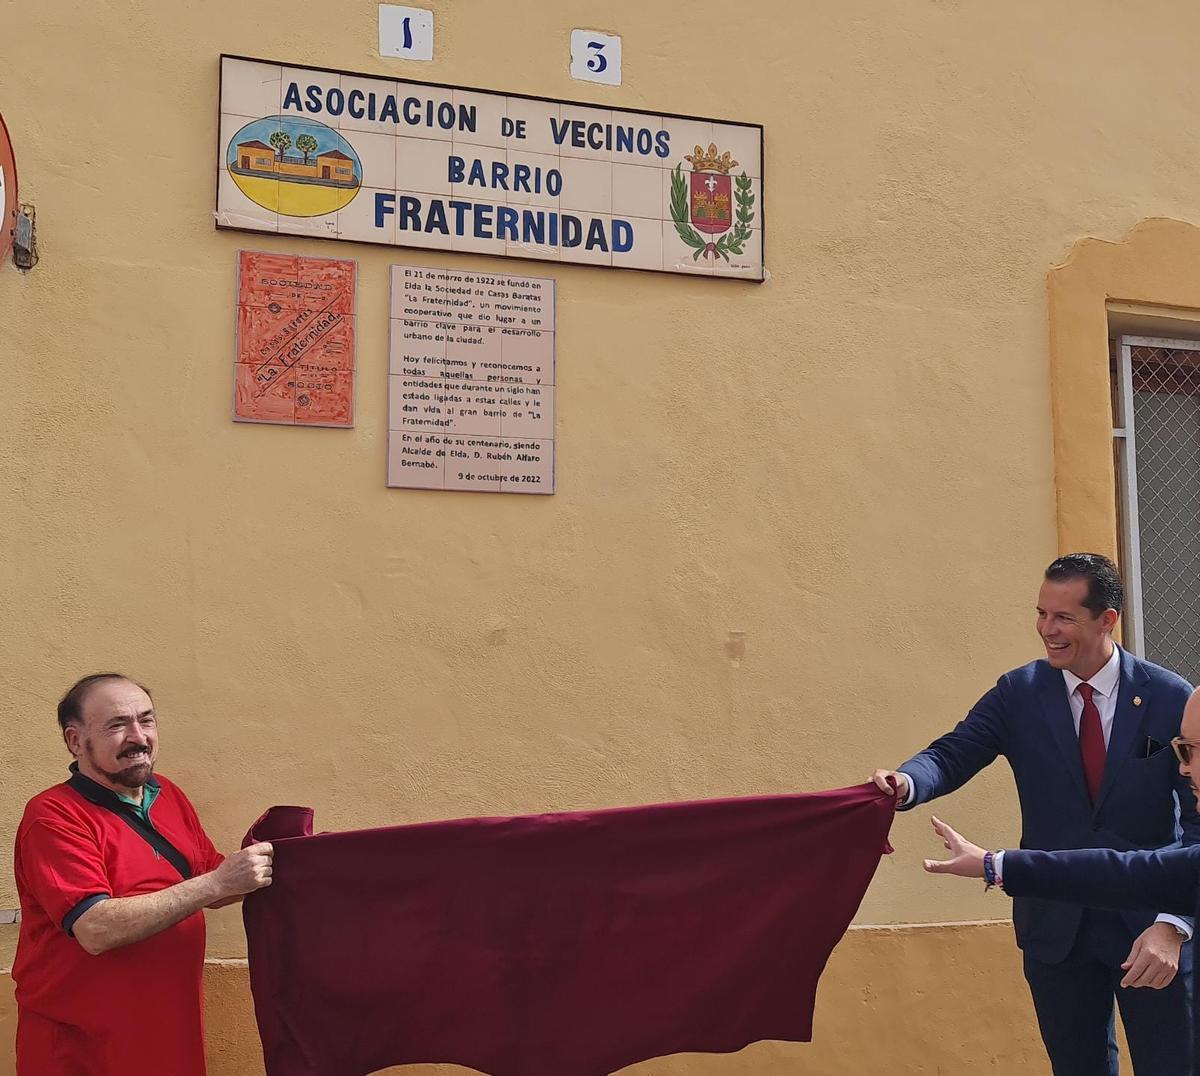 La placa conmemorativa del centenario del barrio La Fraternidad de Elda.